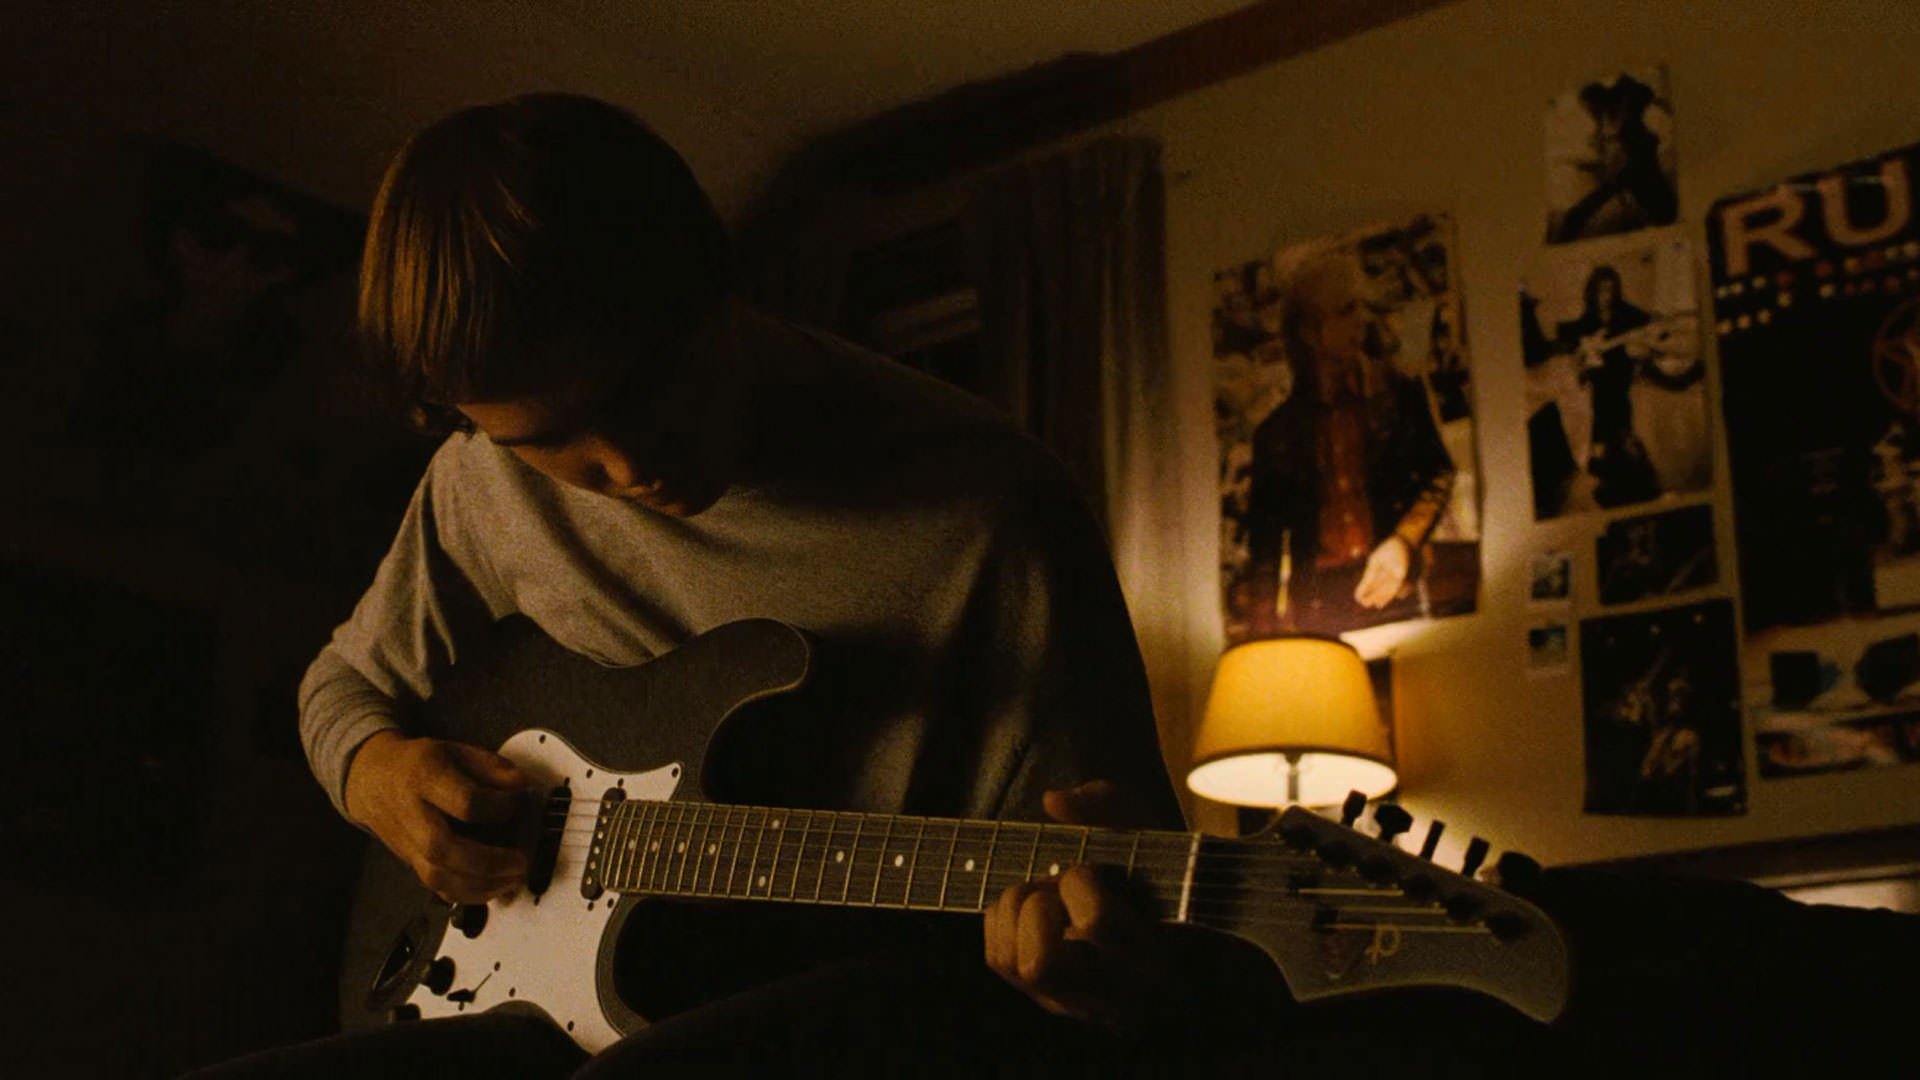 استنلی سیمونز در صحنه ای از فیلم پنجه آهنی شان دورکین گیتار می نوازد.